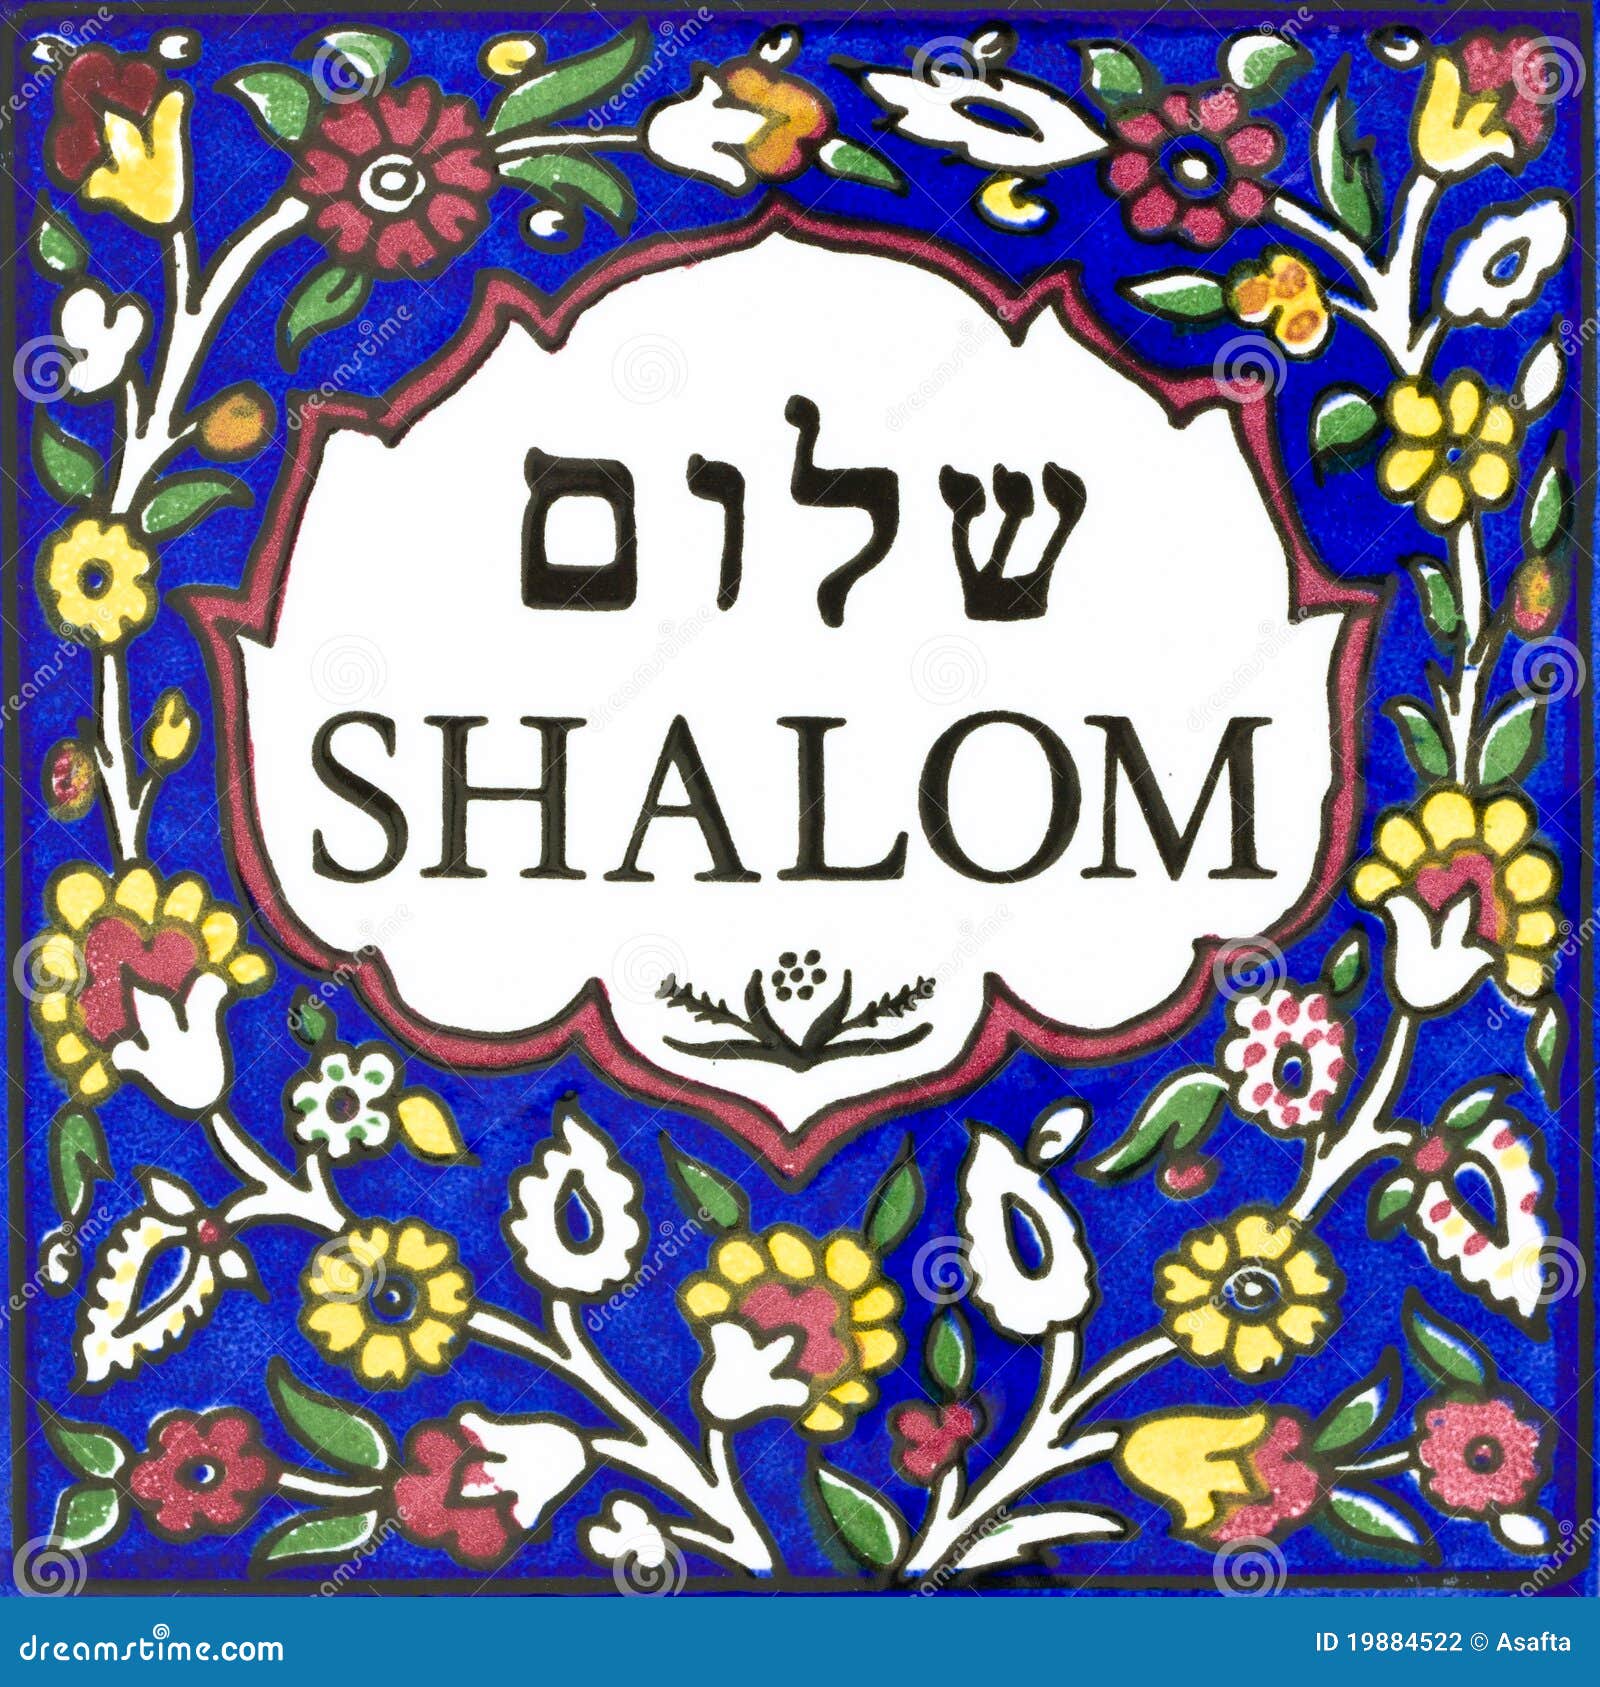 1,596 Shalom Fotos - Libres de Derechos y Gratuitas de Dreamstime